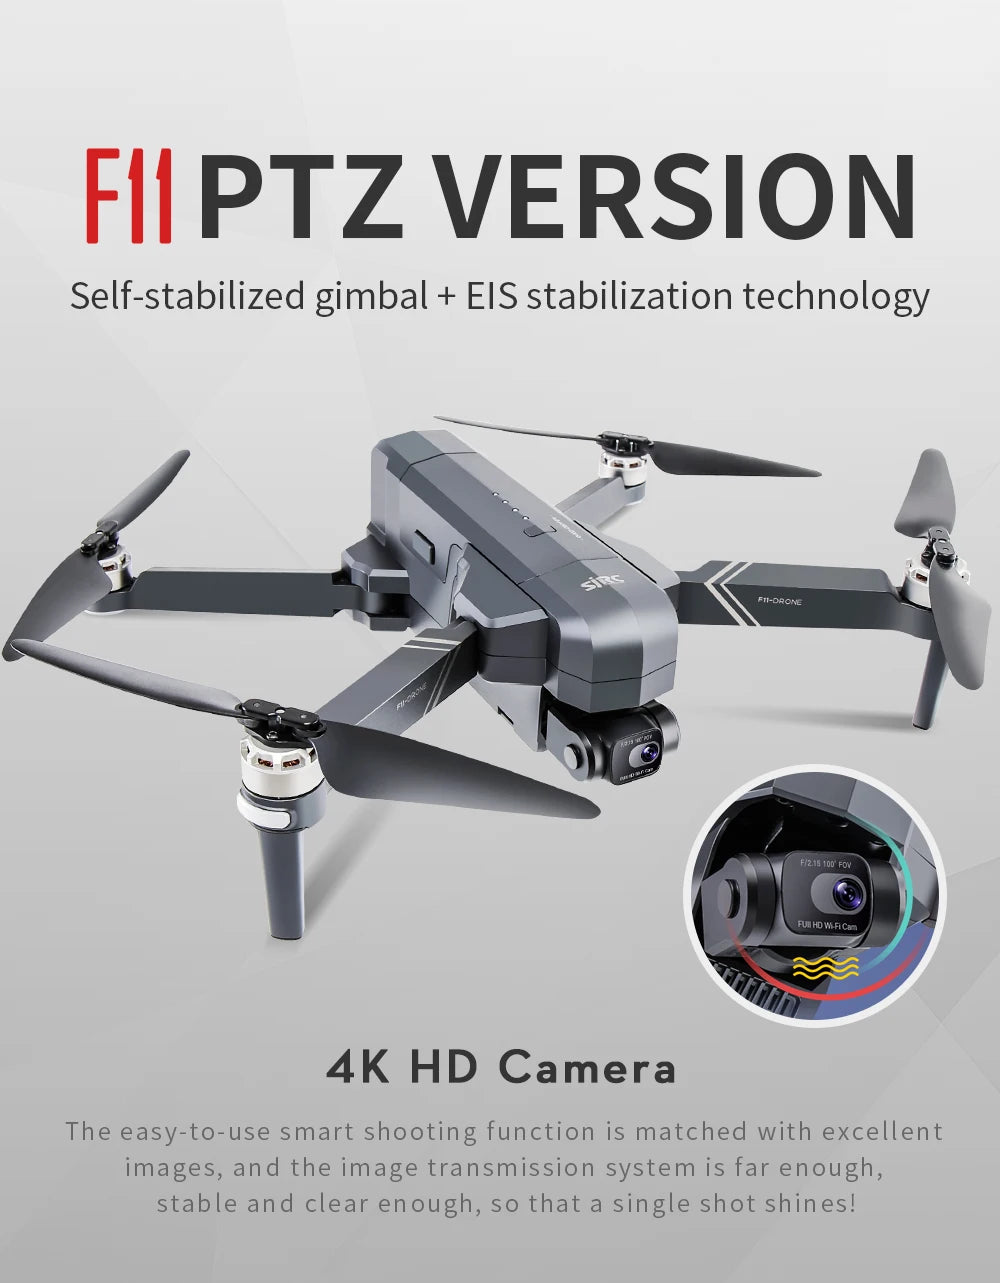 SJRC F11 / F11S  Pro Drone, FII PTZ VERSION Self-stabilized gimbal + ElS